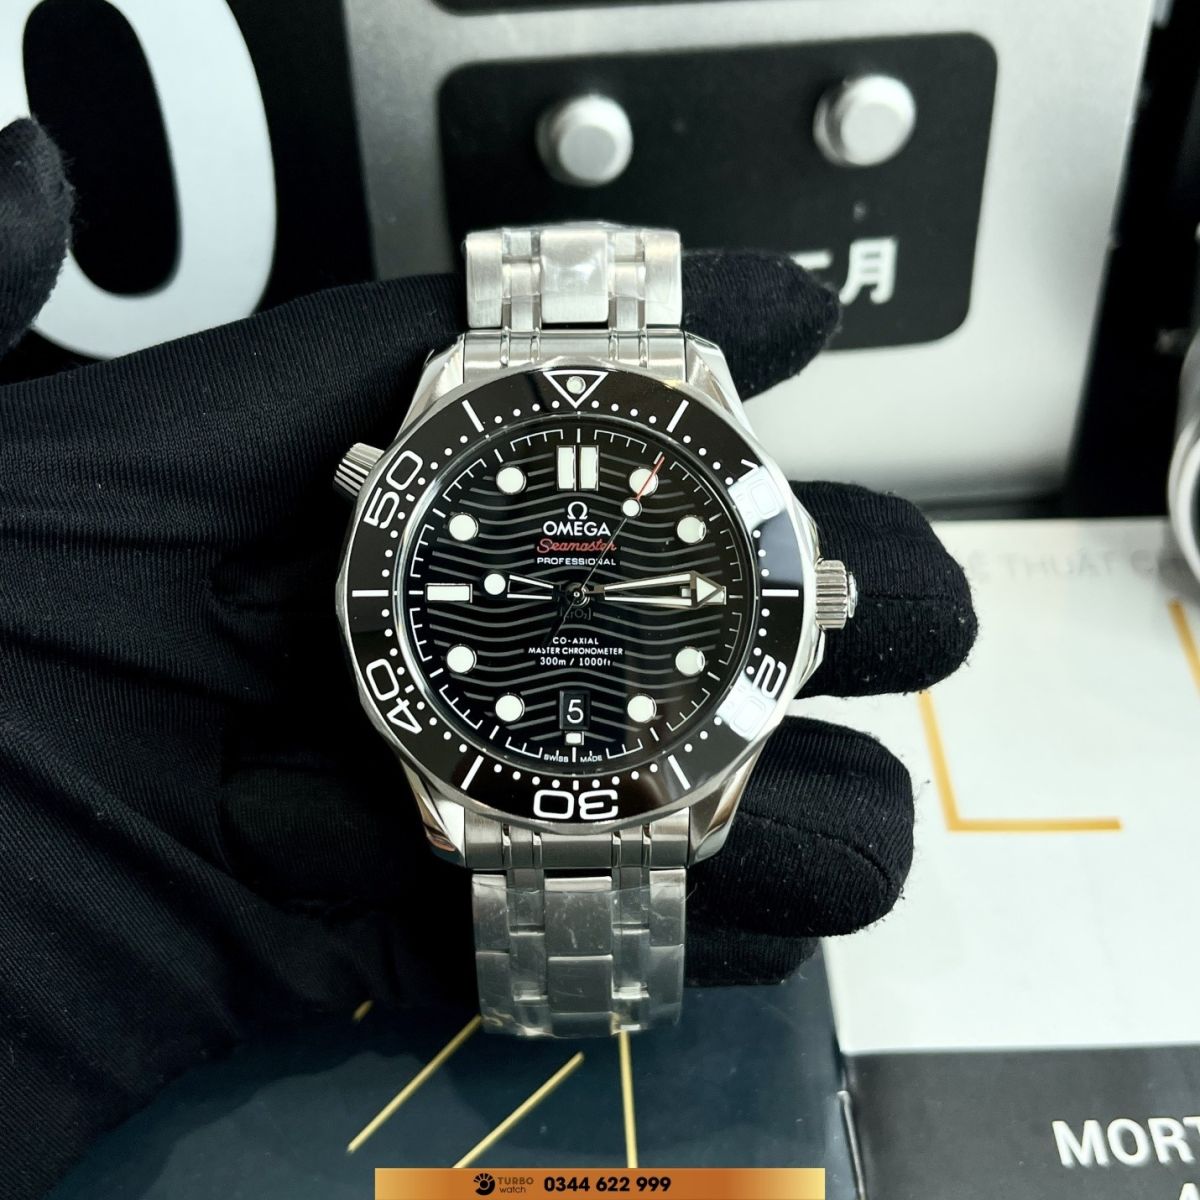 Đồng Hồ Omega Seamaster Super Fake 1:1 là một trong những mẫu đồng hồ được đánh giá cao về độ hoàn thiện trên thị trường